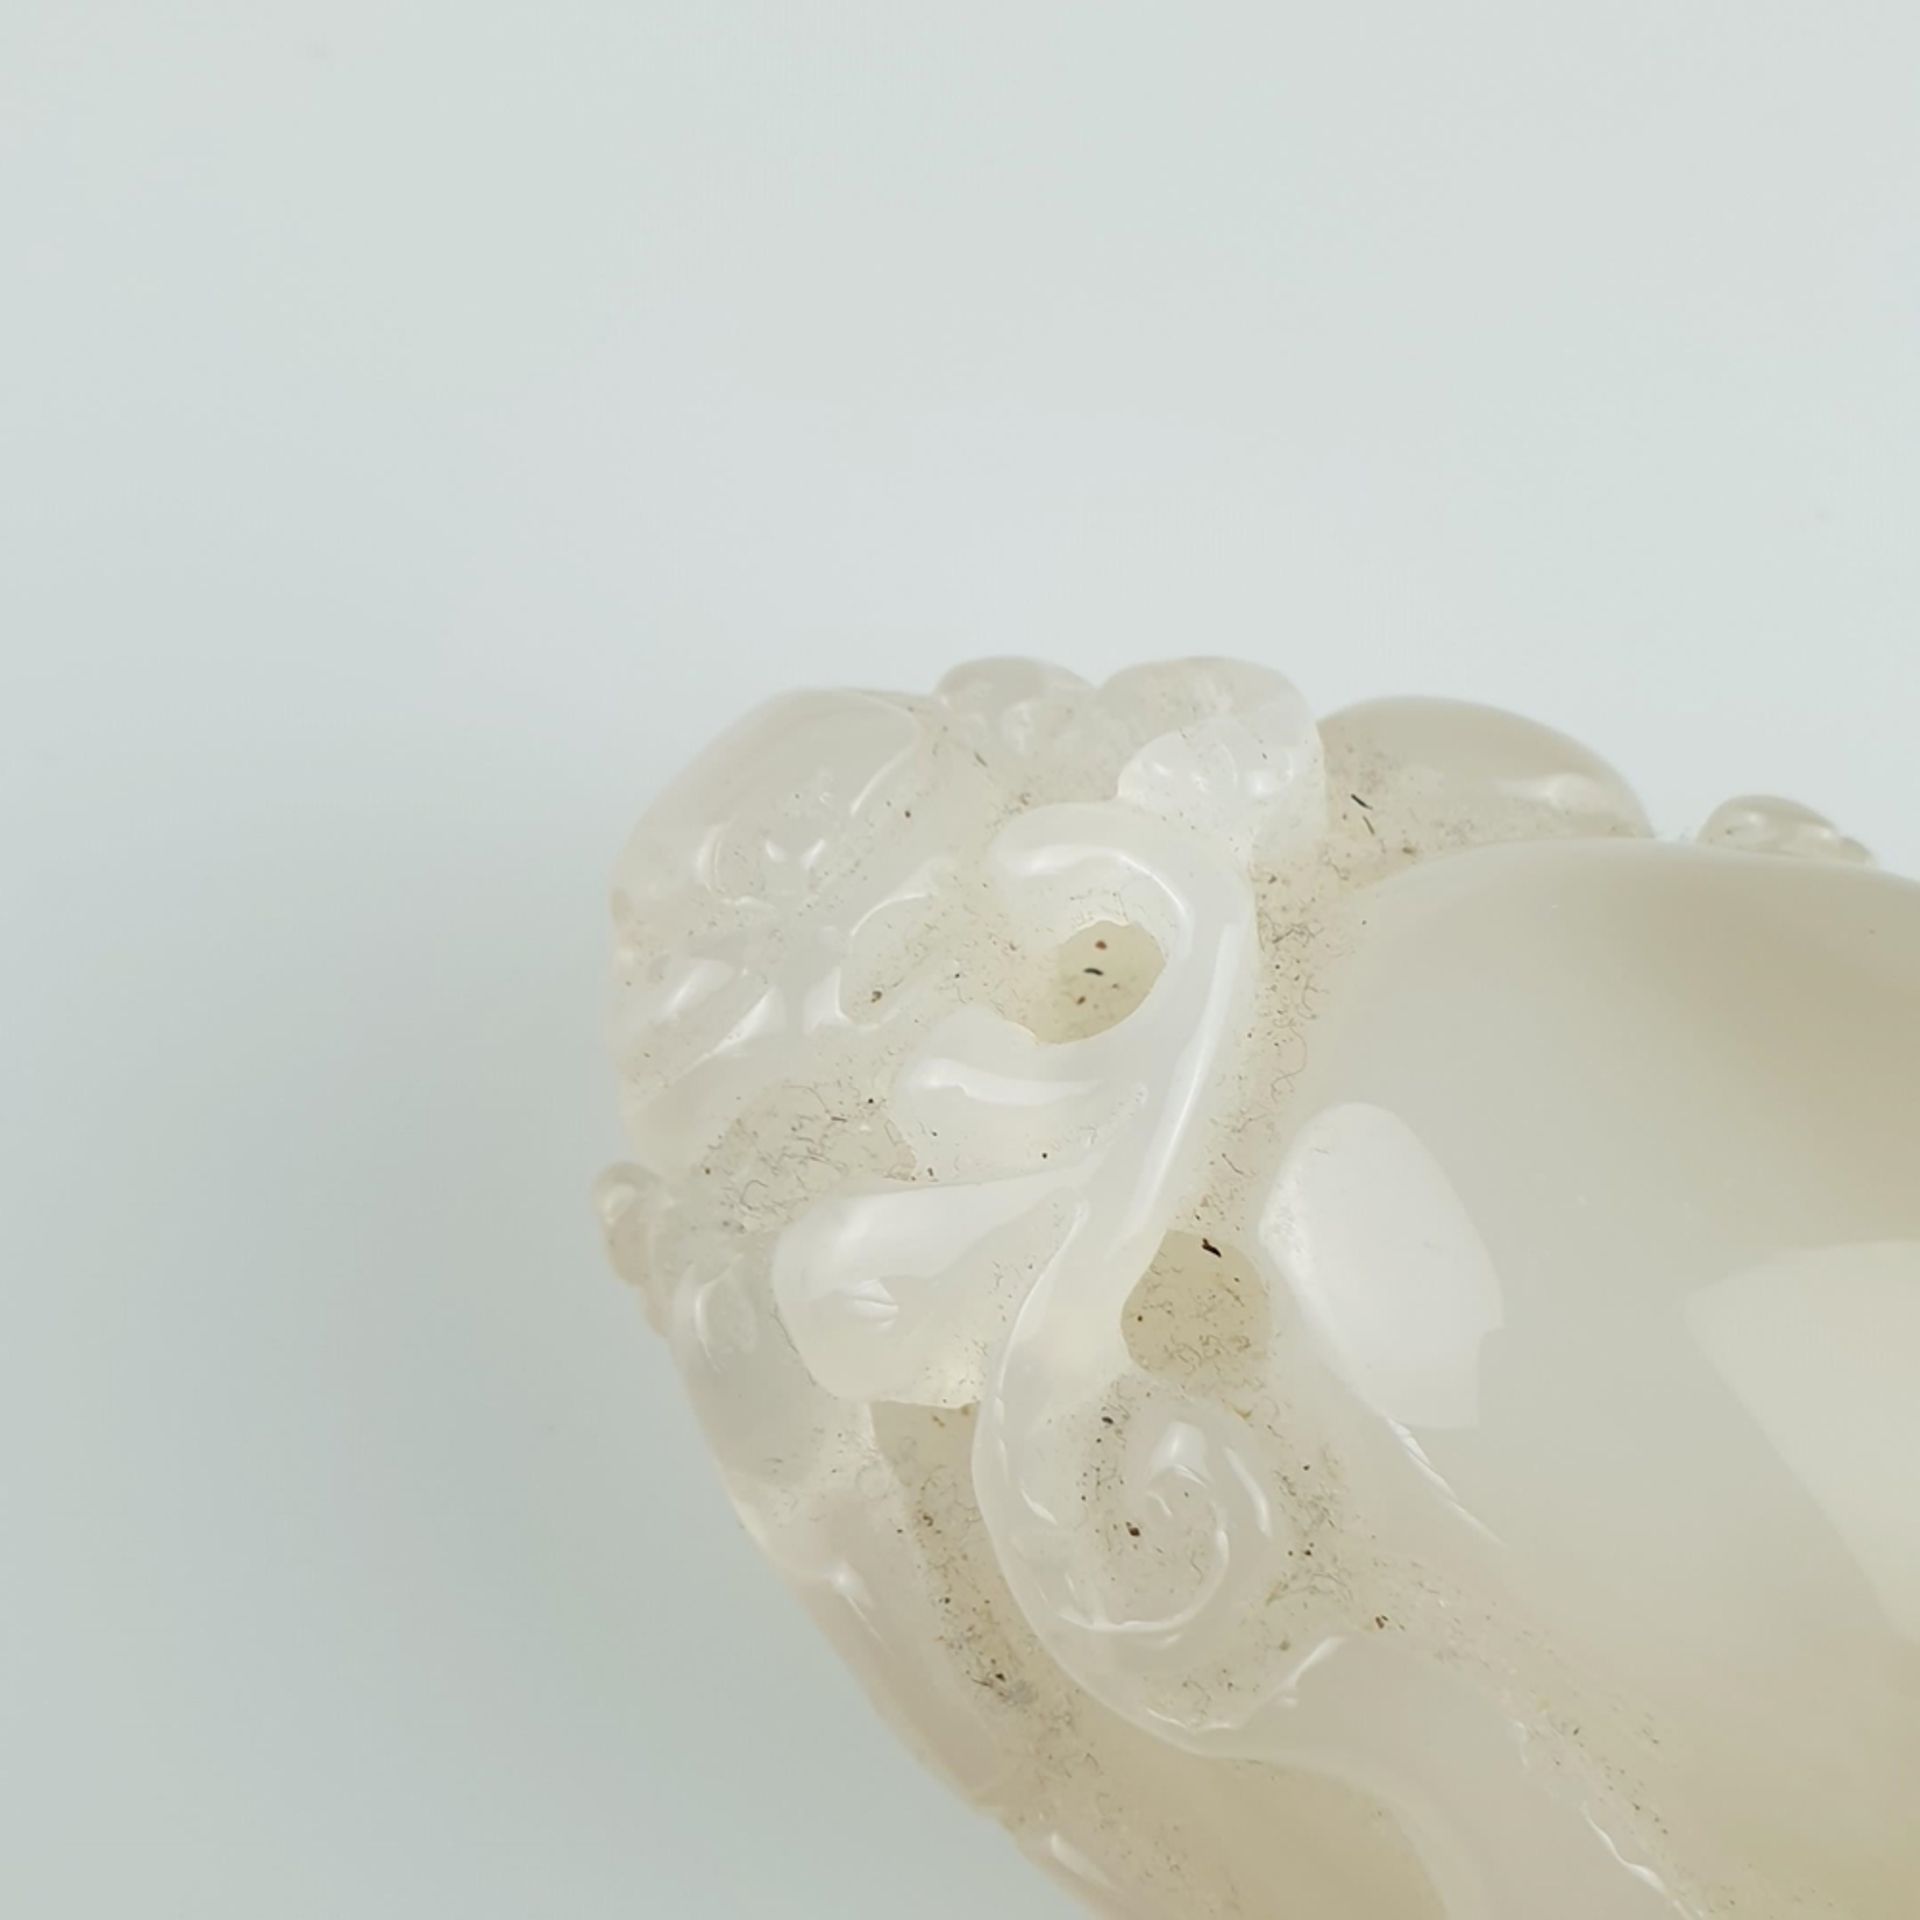 Jadeschnitzerei - China, gräulich weiße Jade, feinpoliert, in Kieselform mit durchbrochen - Bild 2 aus 4